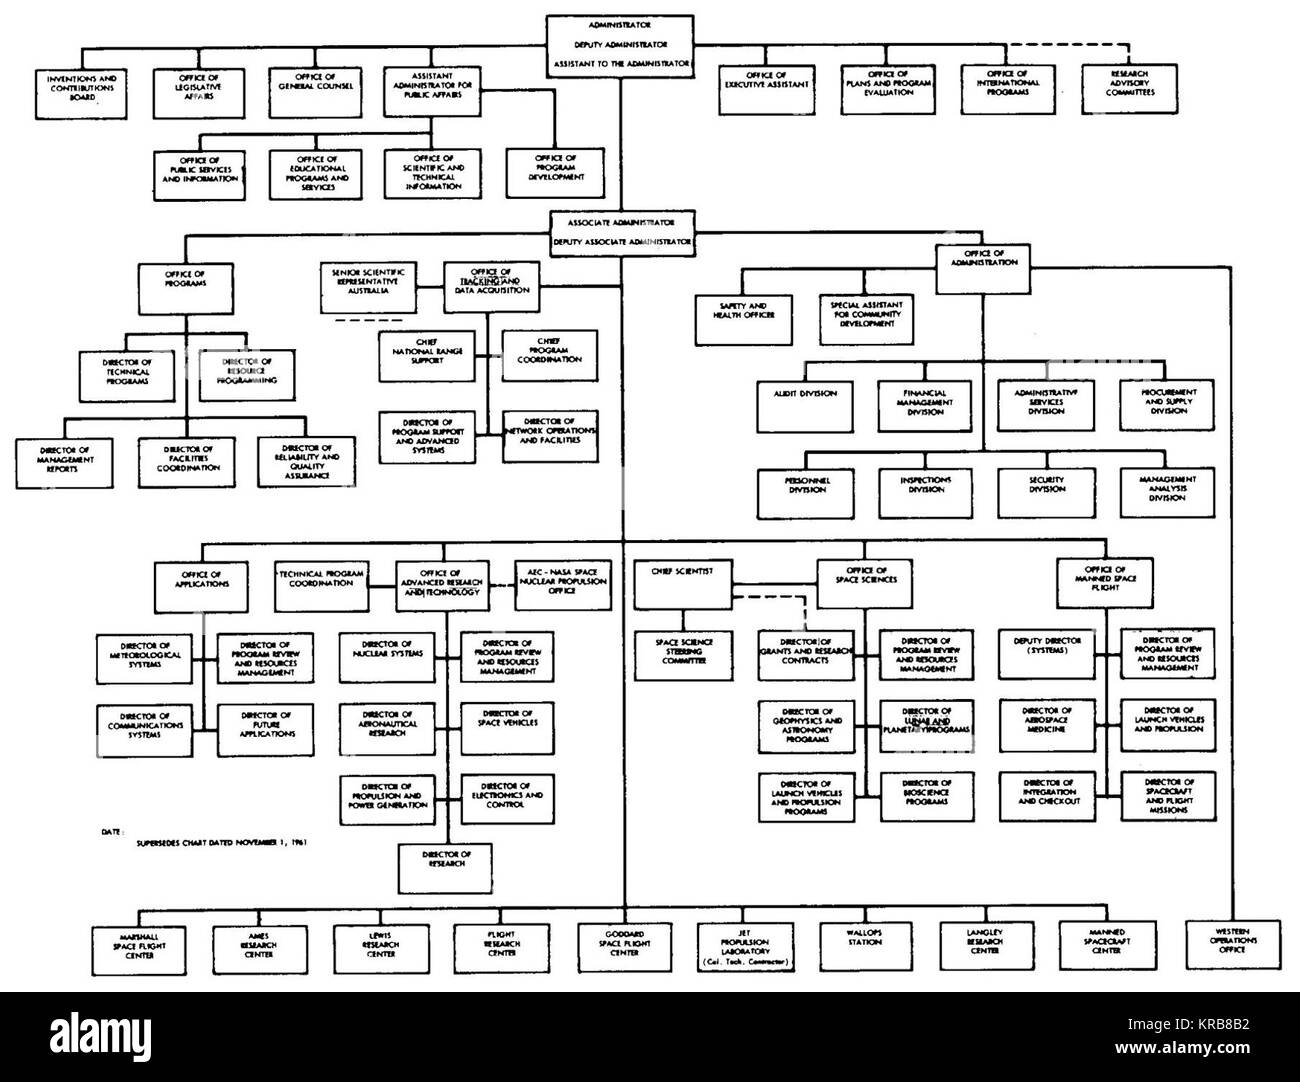 Nasa Org Chart